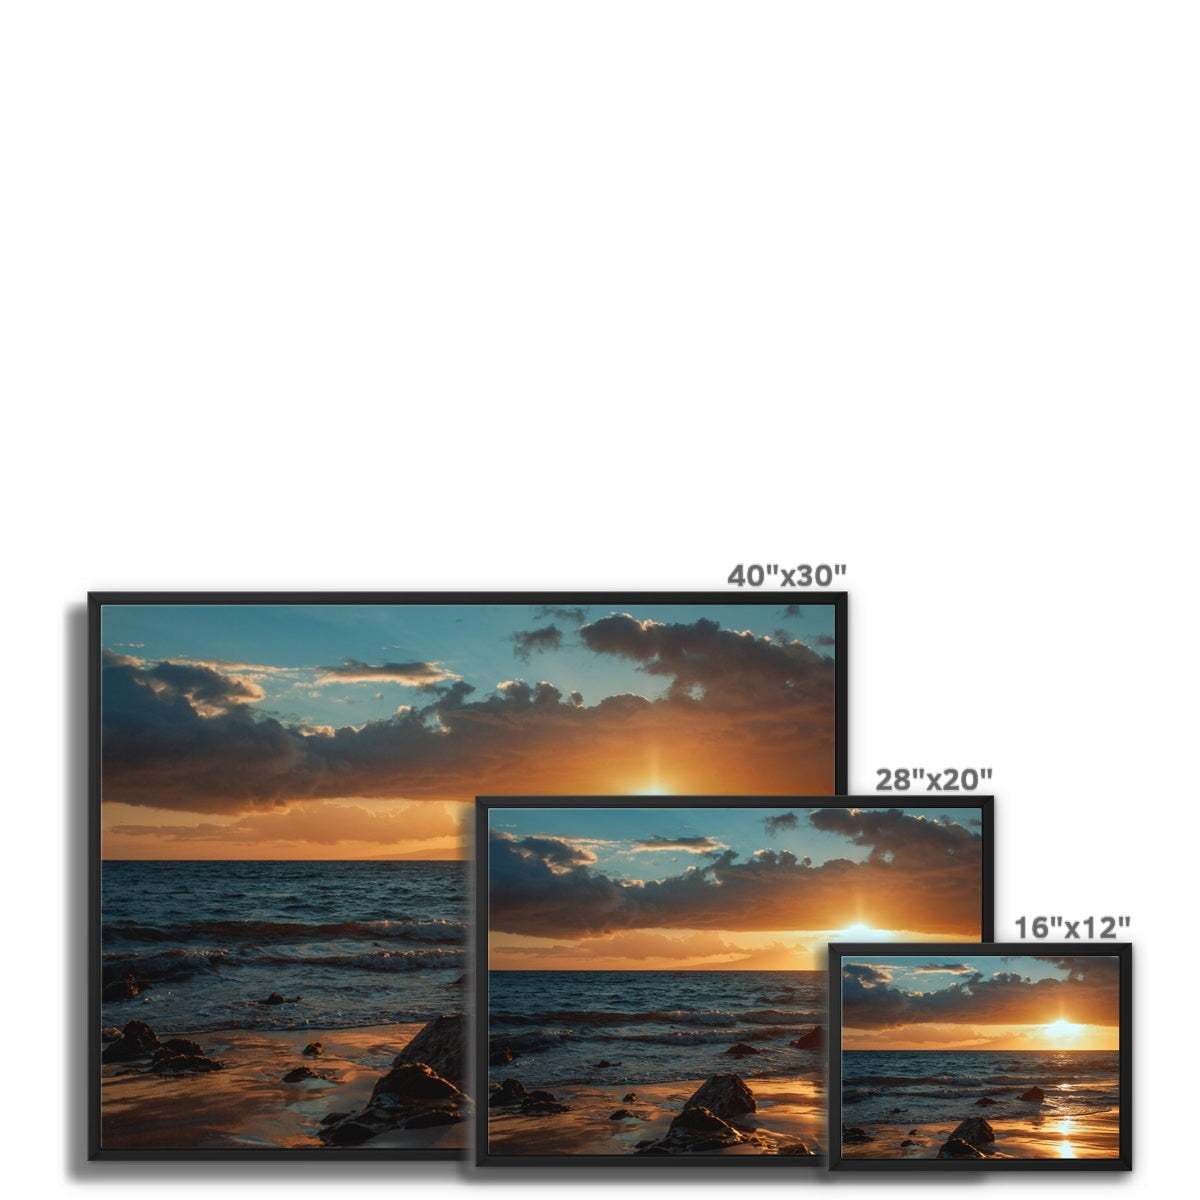 Maui Sunset Framed Canvas